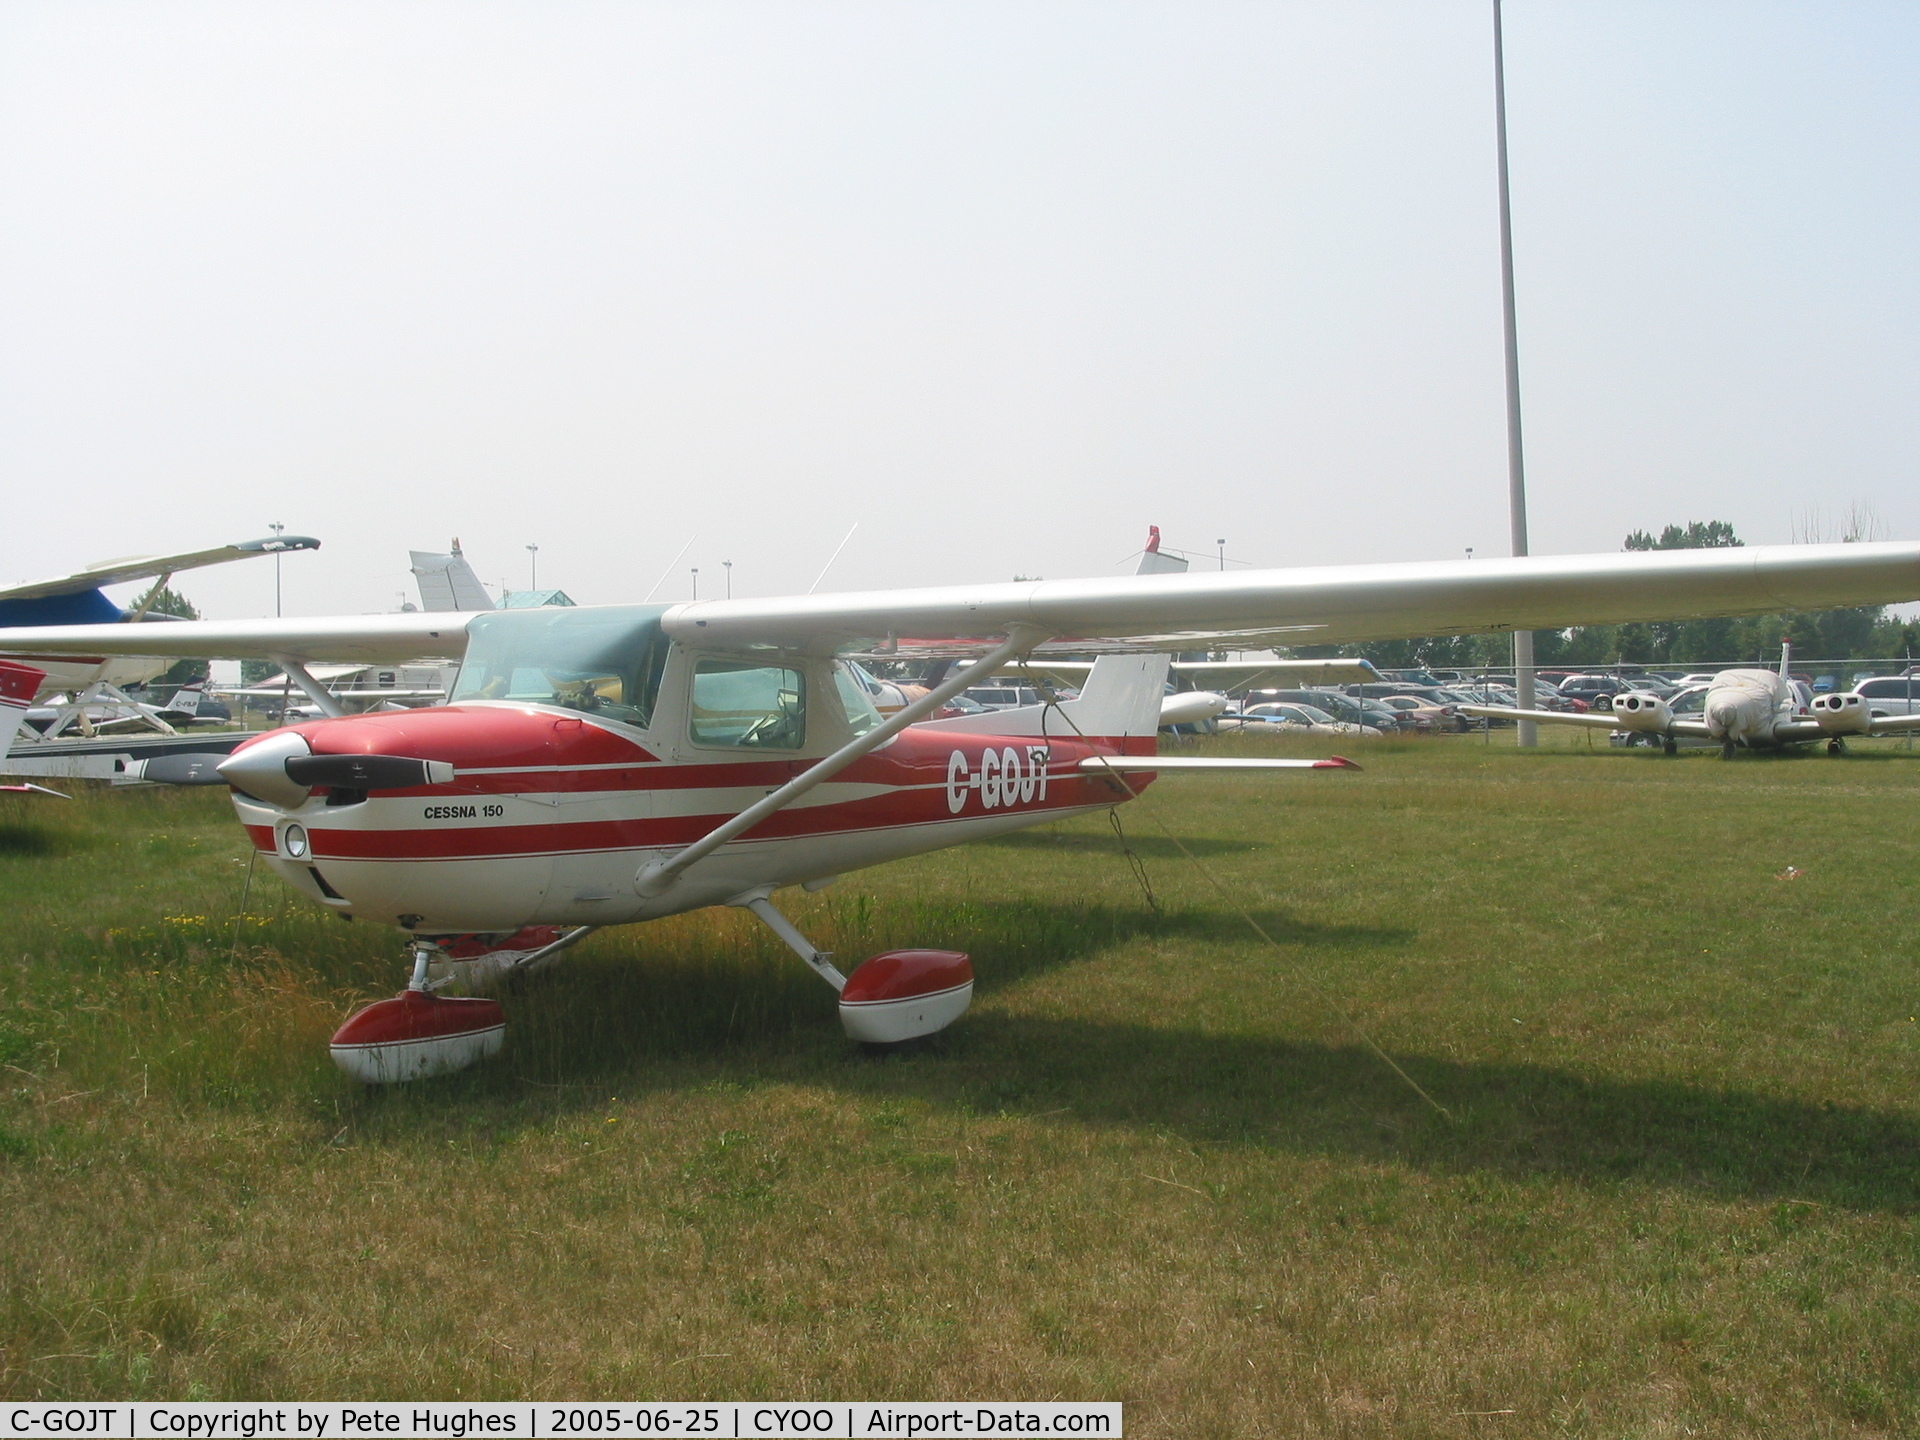 C-GOJT, 1975 Cessna 150M C/N 15077126, port side correctly marked as C-GOJT but....